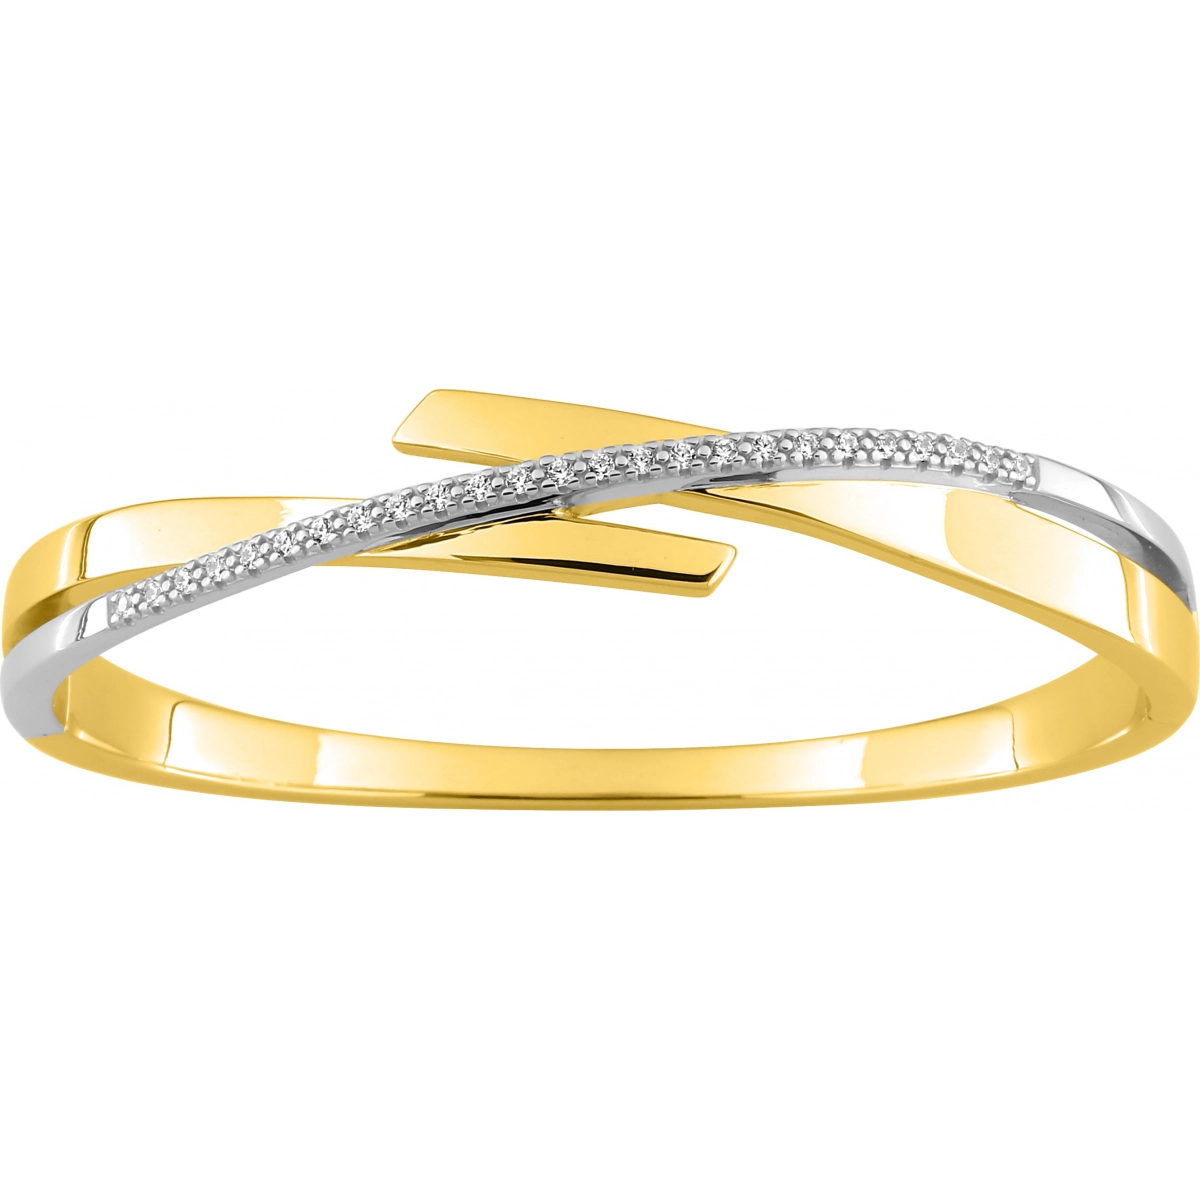 Bracelet w. cz gold plated Brass Lua Blanca  256964.9 